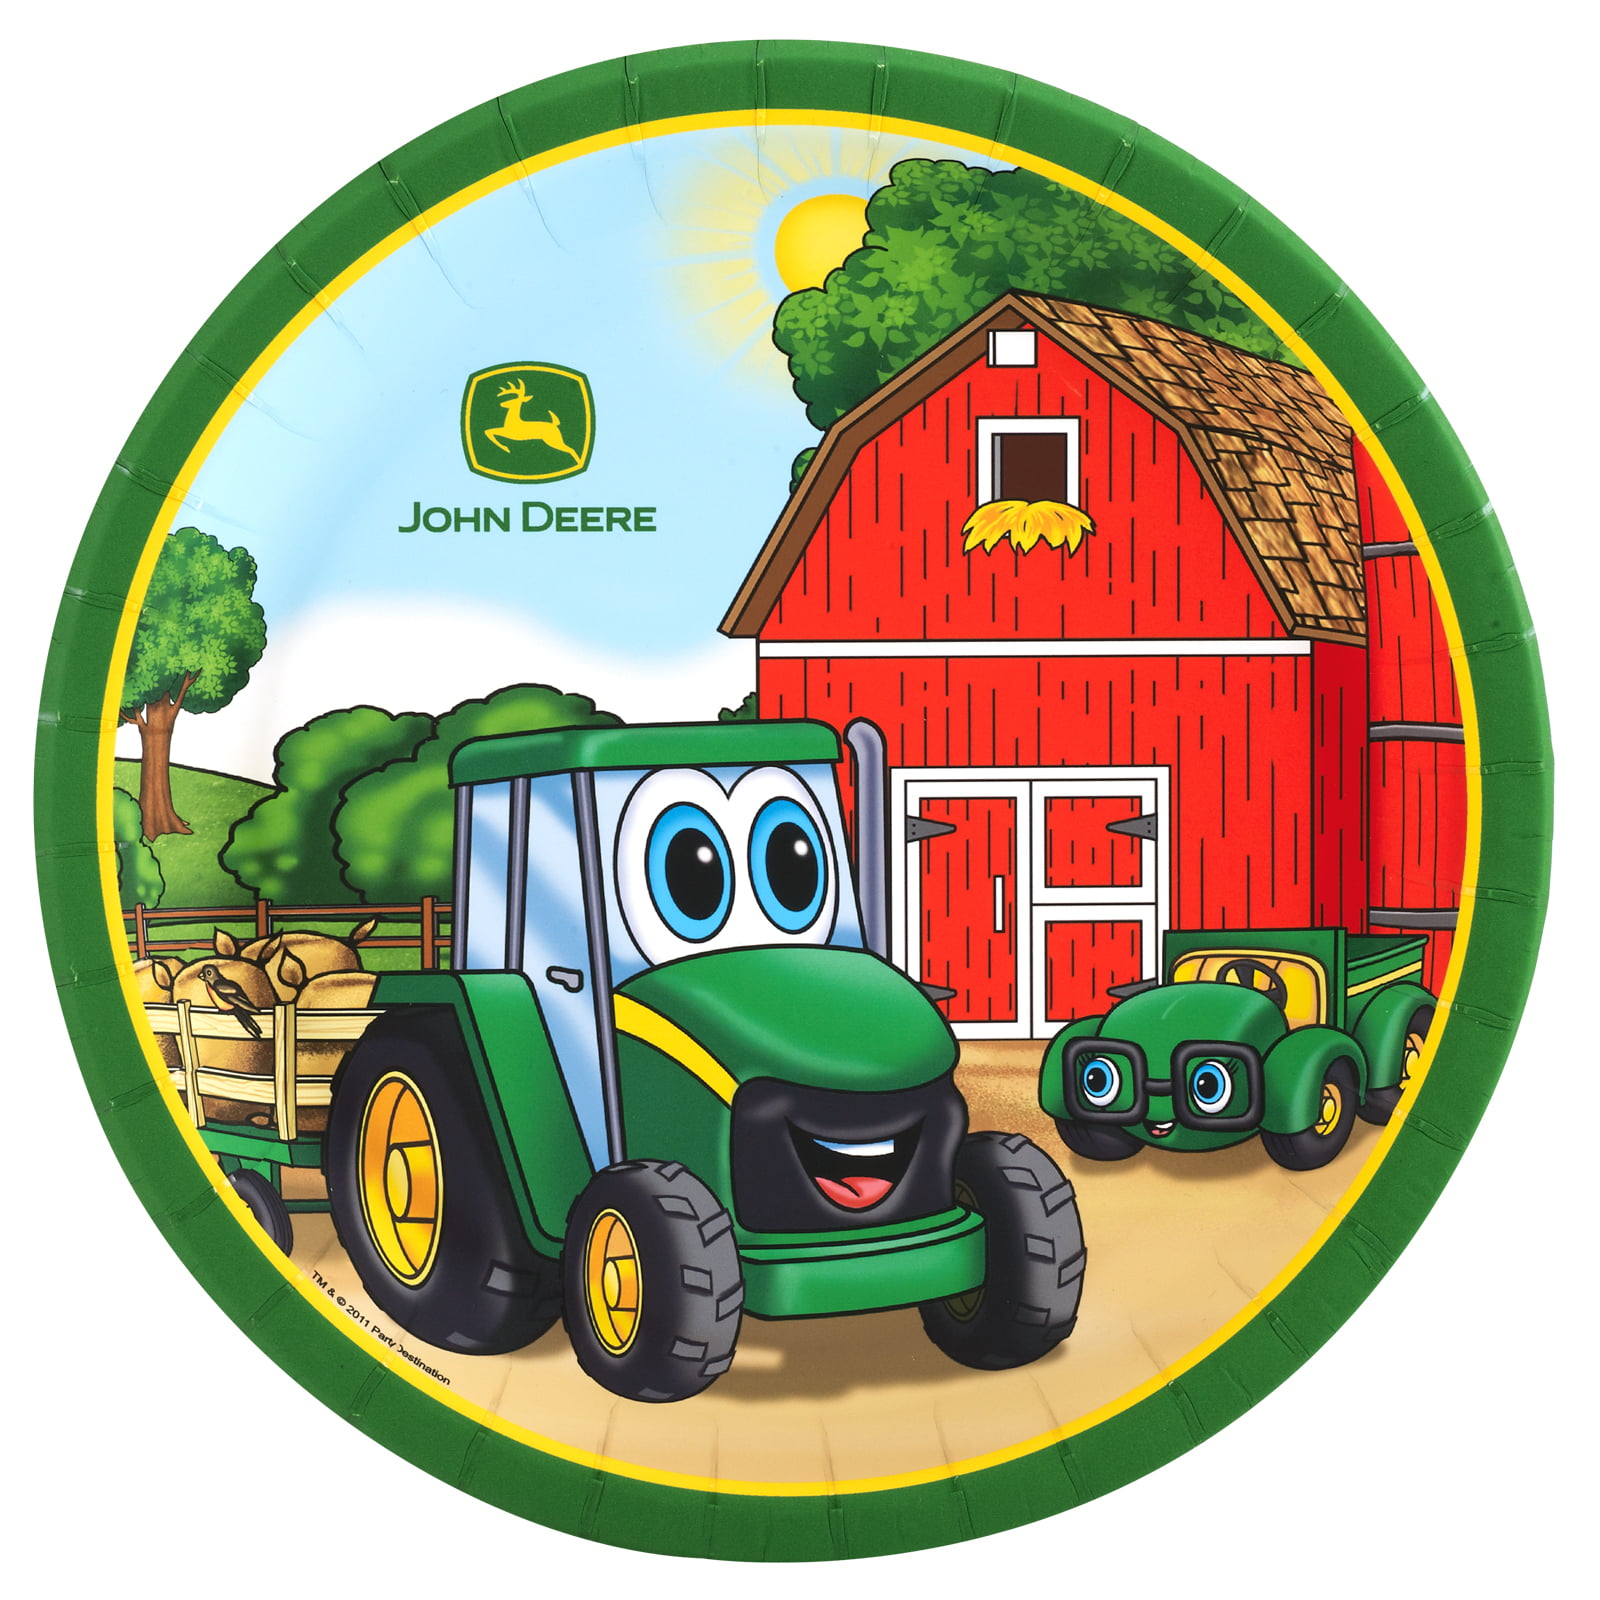 John Deere Johnny Tractor Dinner Plates (8 Count) - Walmart.com